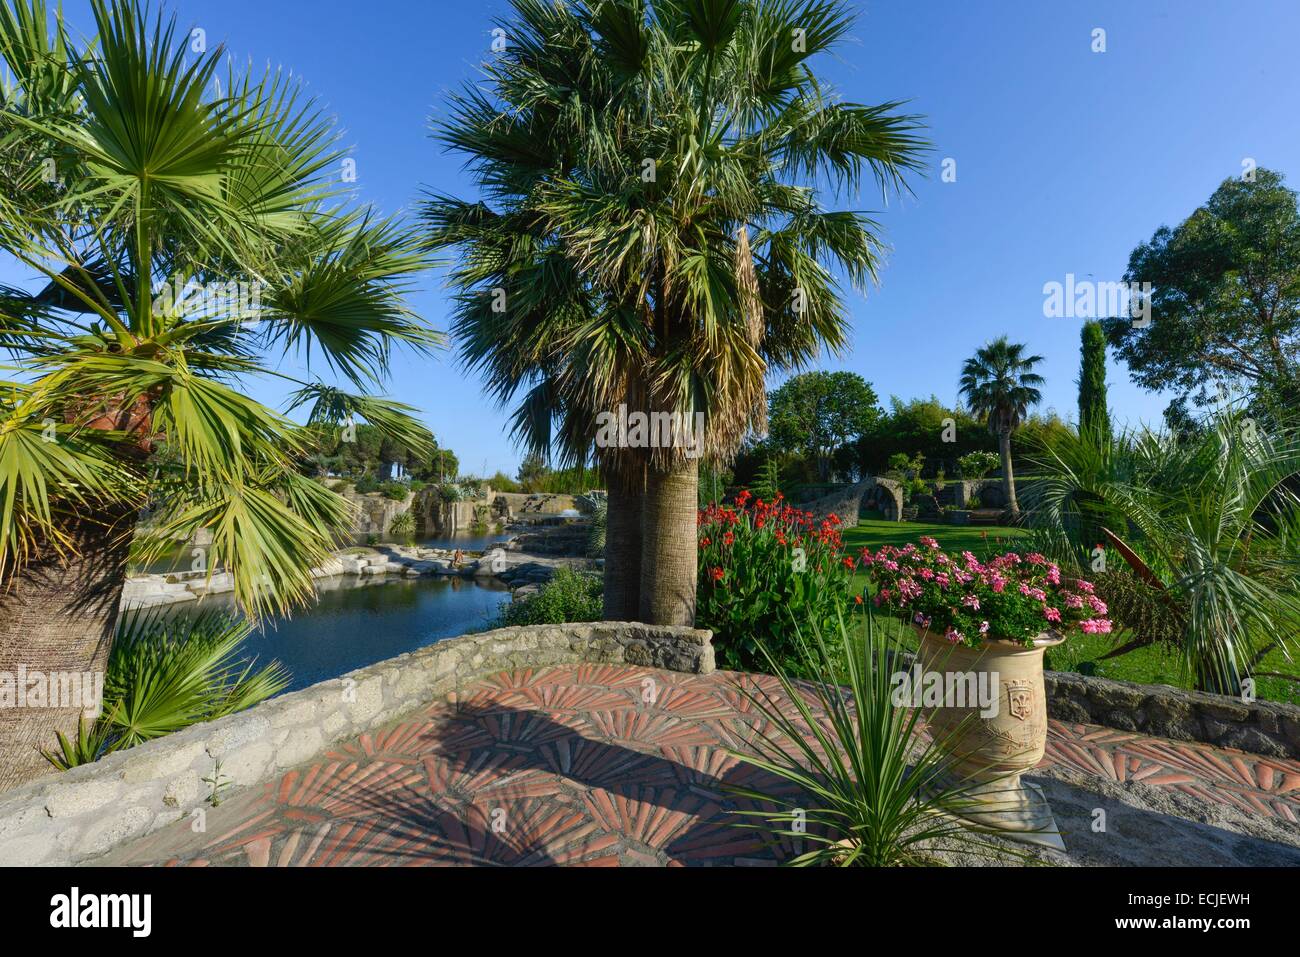 La France, l'Hérault, Béziers, Saint Adrien's garden, classé jardin  remarquable (Jardin remarquable), jardin paysagé créé dans une carrière  datant du Moyen-Âge, allé bordée de palmier avec une étendue d'eau  d'arrière-plan Photo Stock -